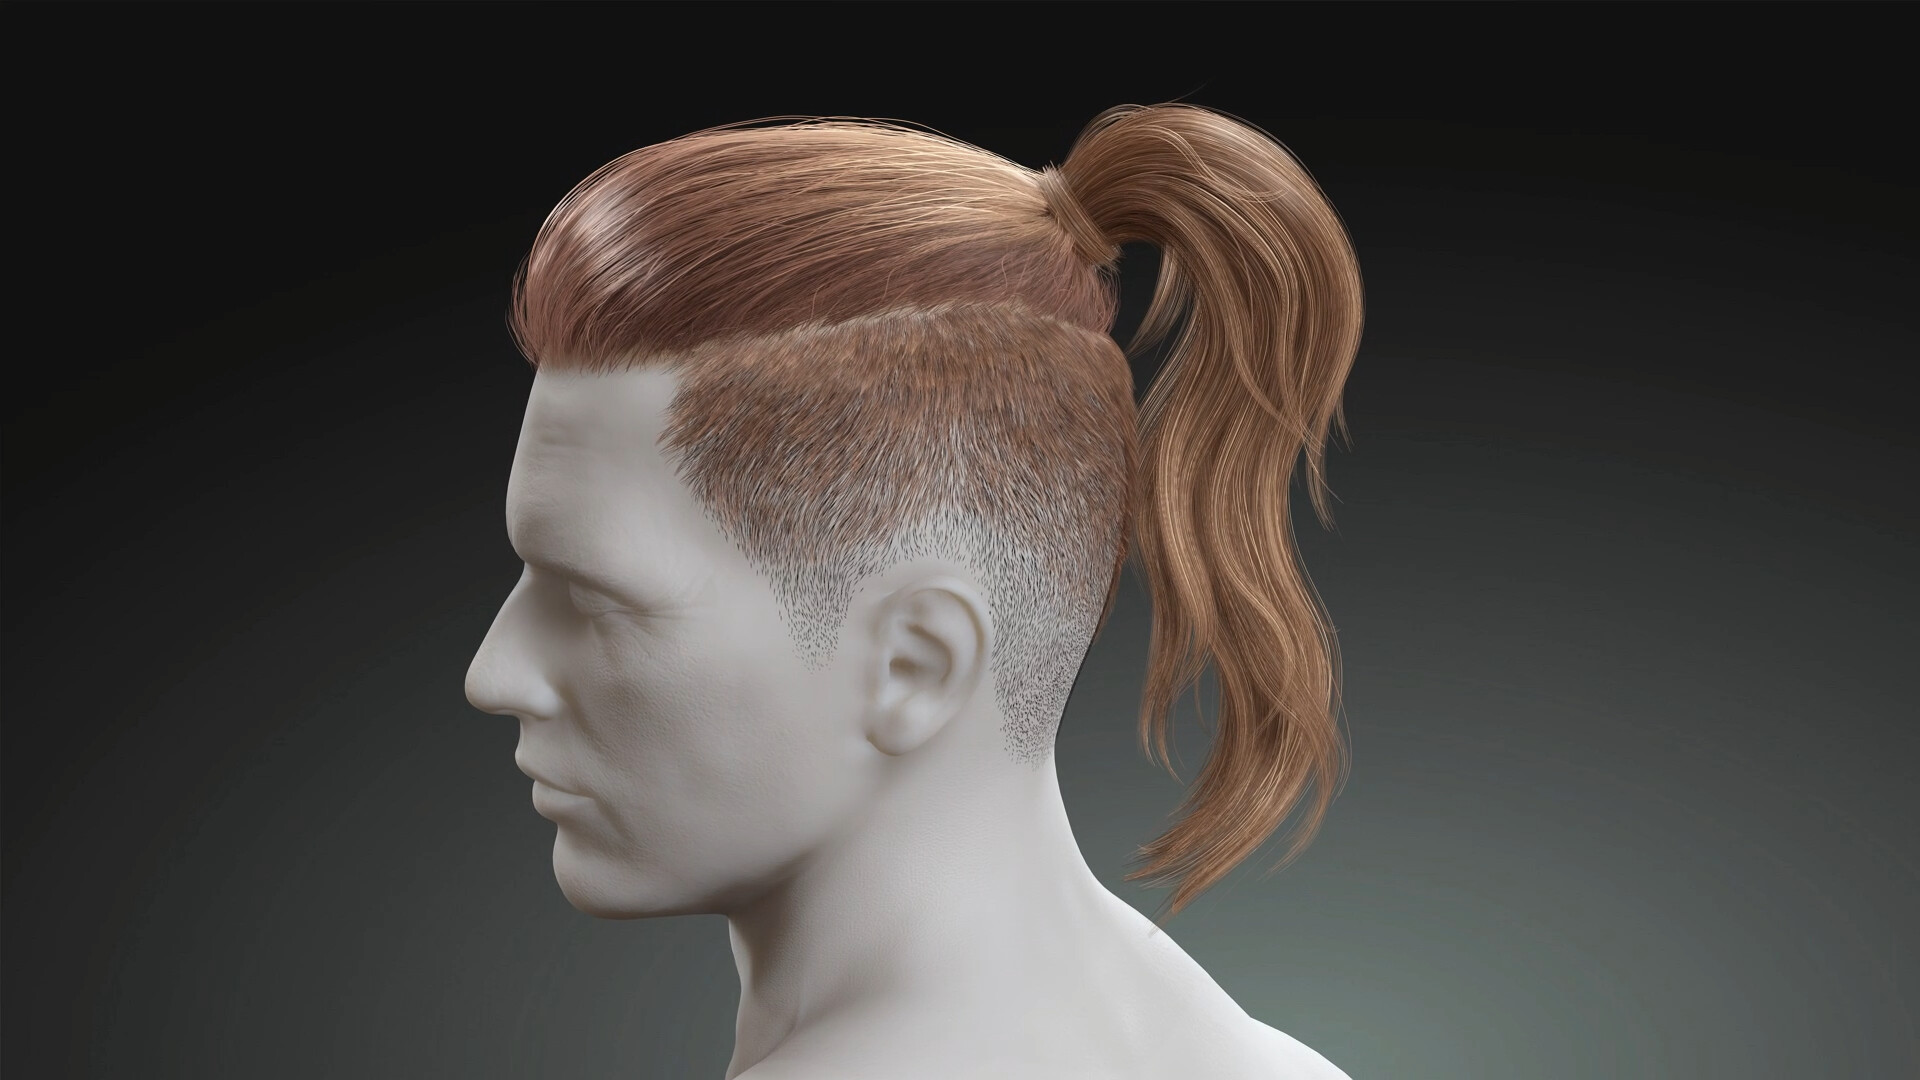 ArtStation - Male Undercut Hairstyles